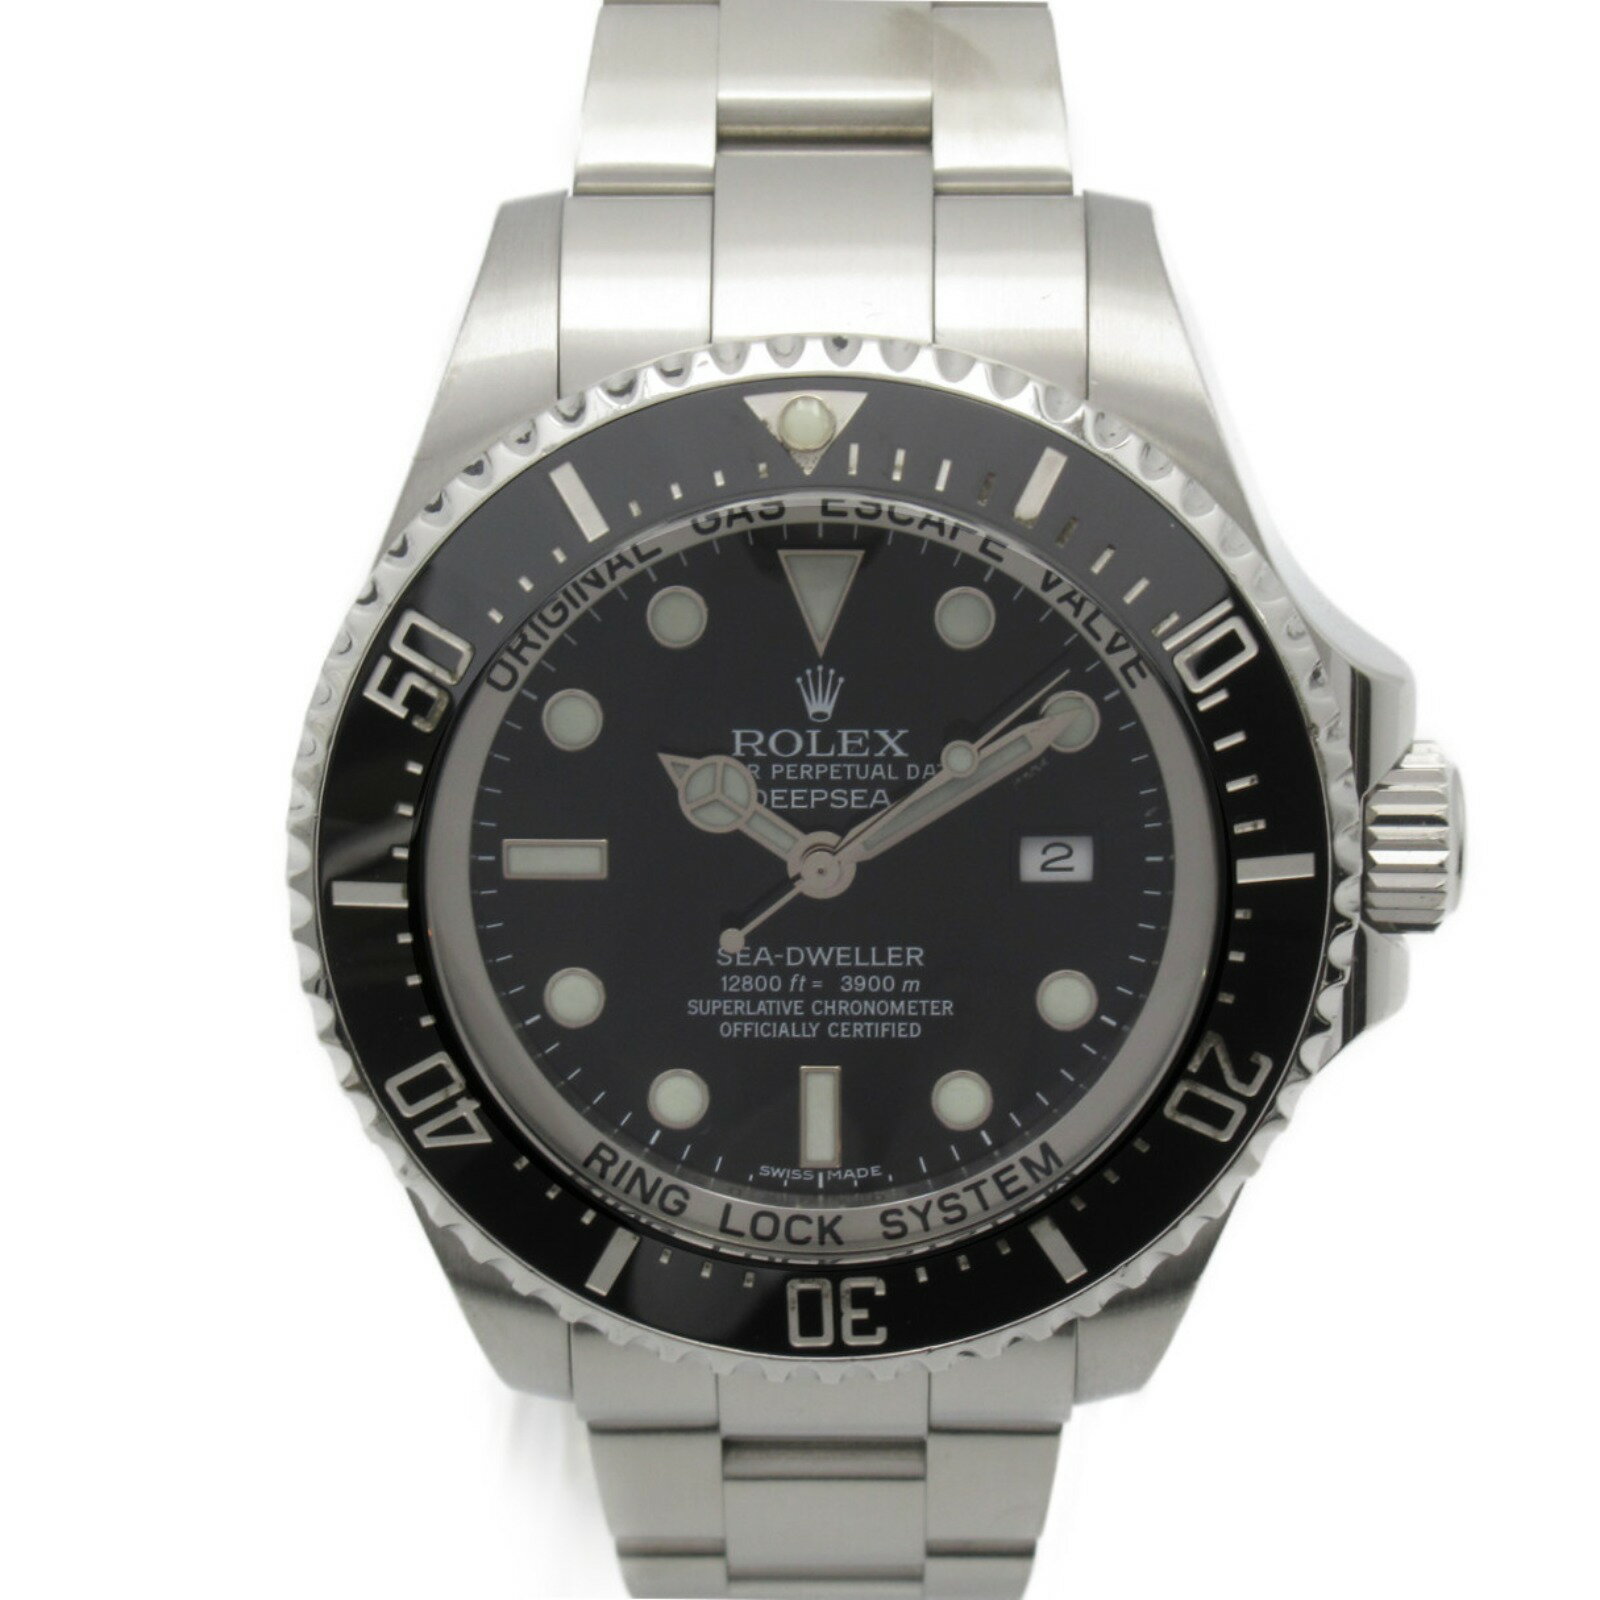 ロレックス ROLEX シードゥエラー 腕時計 時計 ステンレススチール メンズ ブラック系 116660 【中古】 | ブランド ブランド時計 ブランド腕時計 ウォッチ